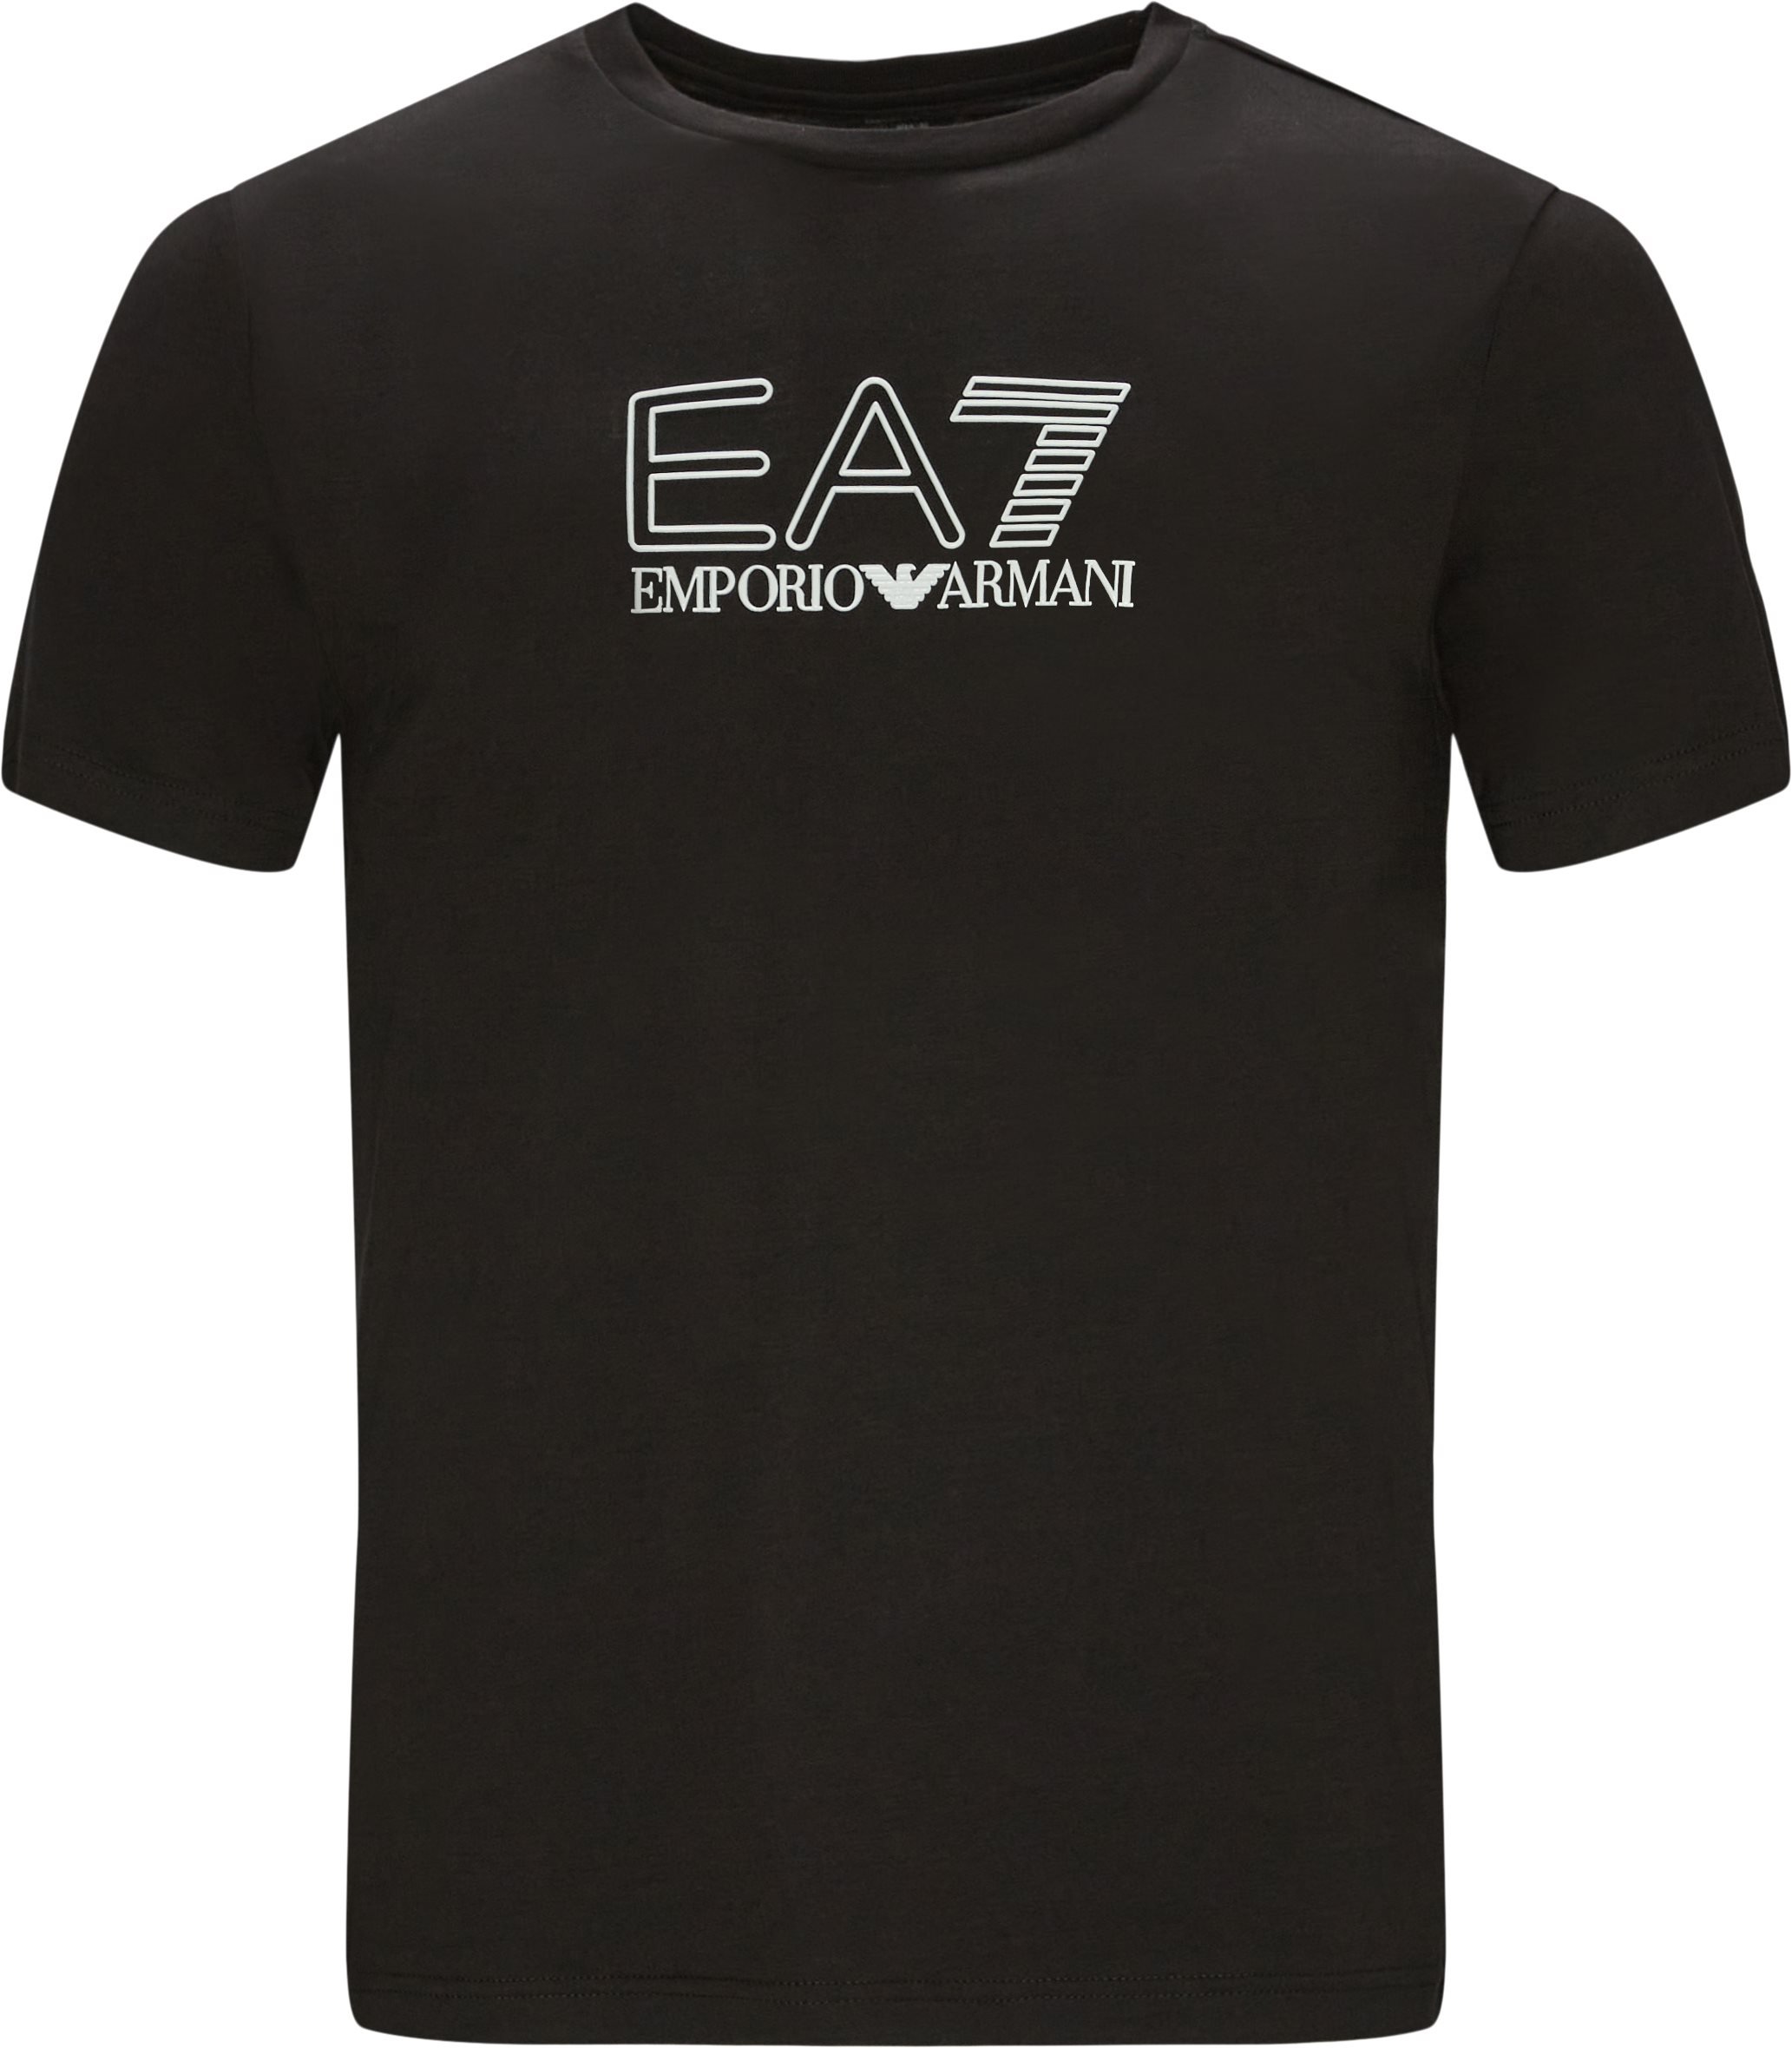 PJM9Z Tee - T-shirts - Regular fit - Svart